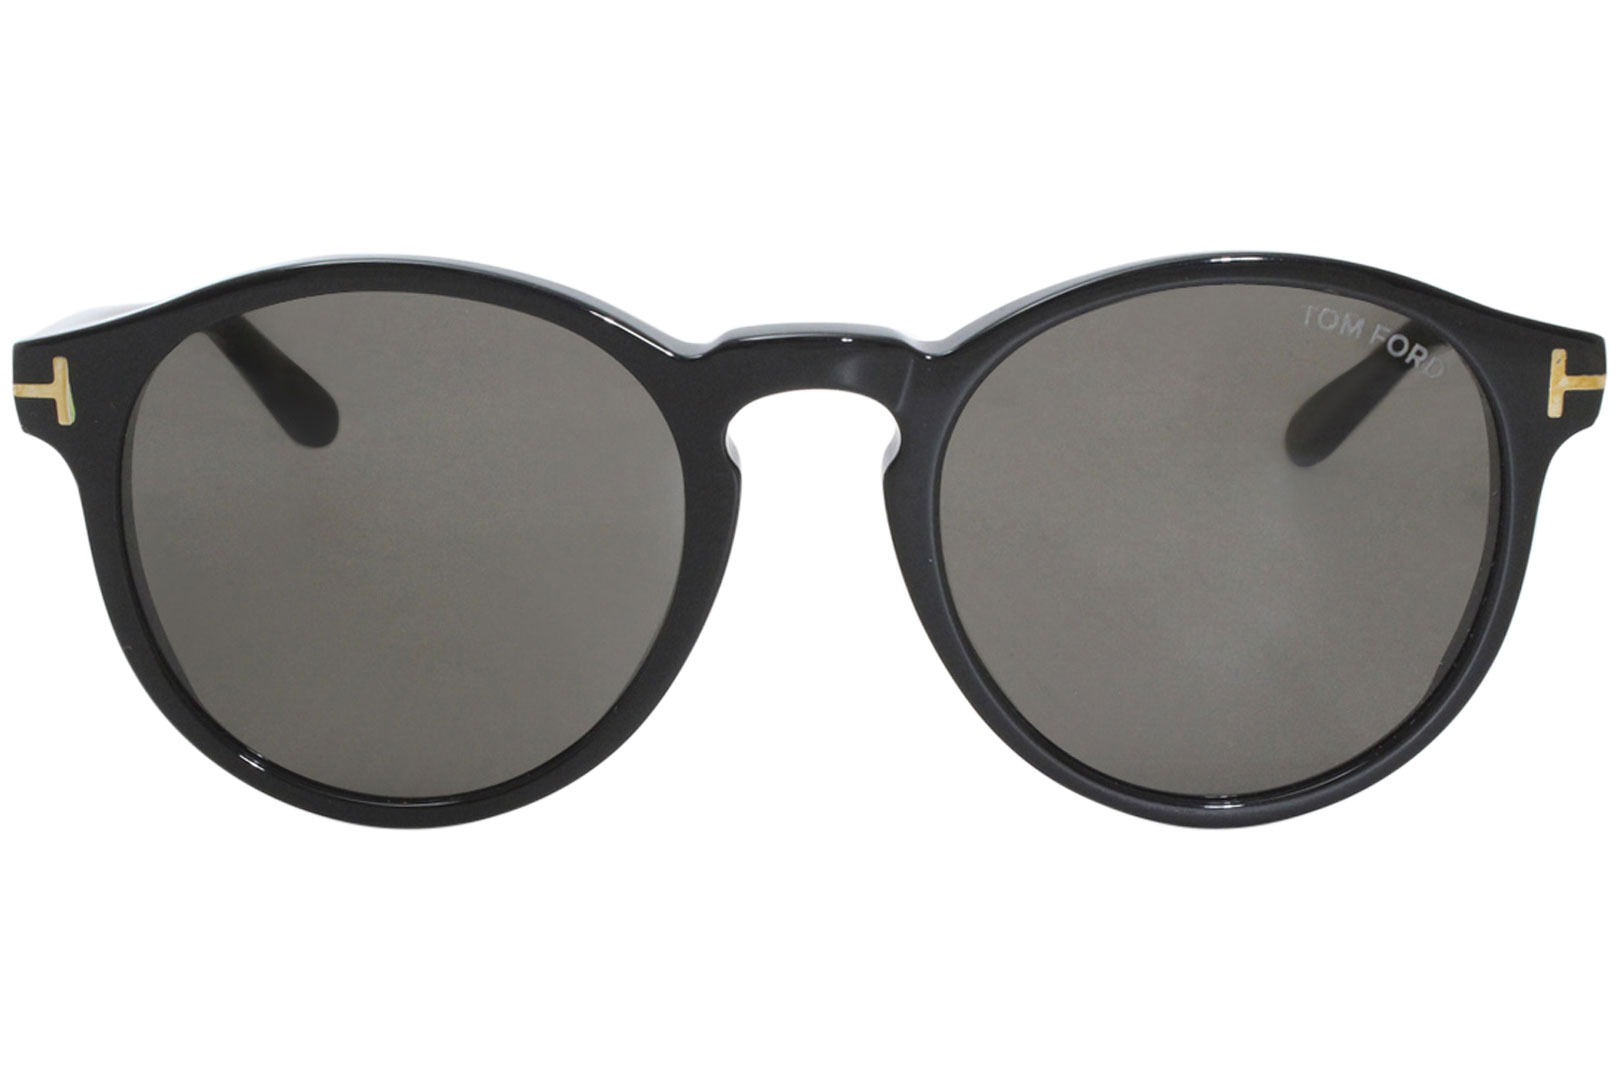 Tom Ford Ian-02 TF591 Sunglasses Men's Round Shades | EyeSpecs.com